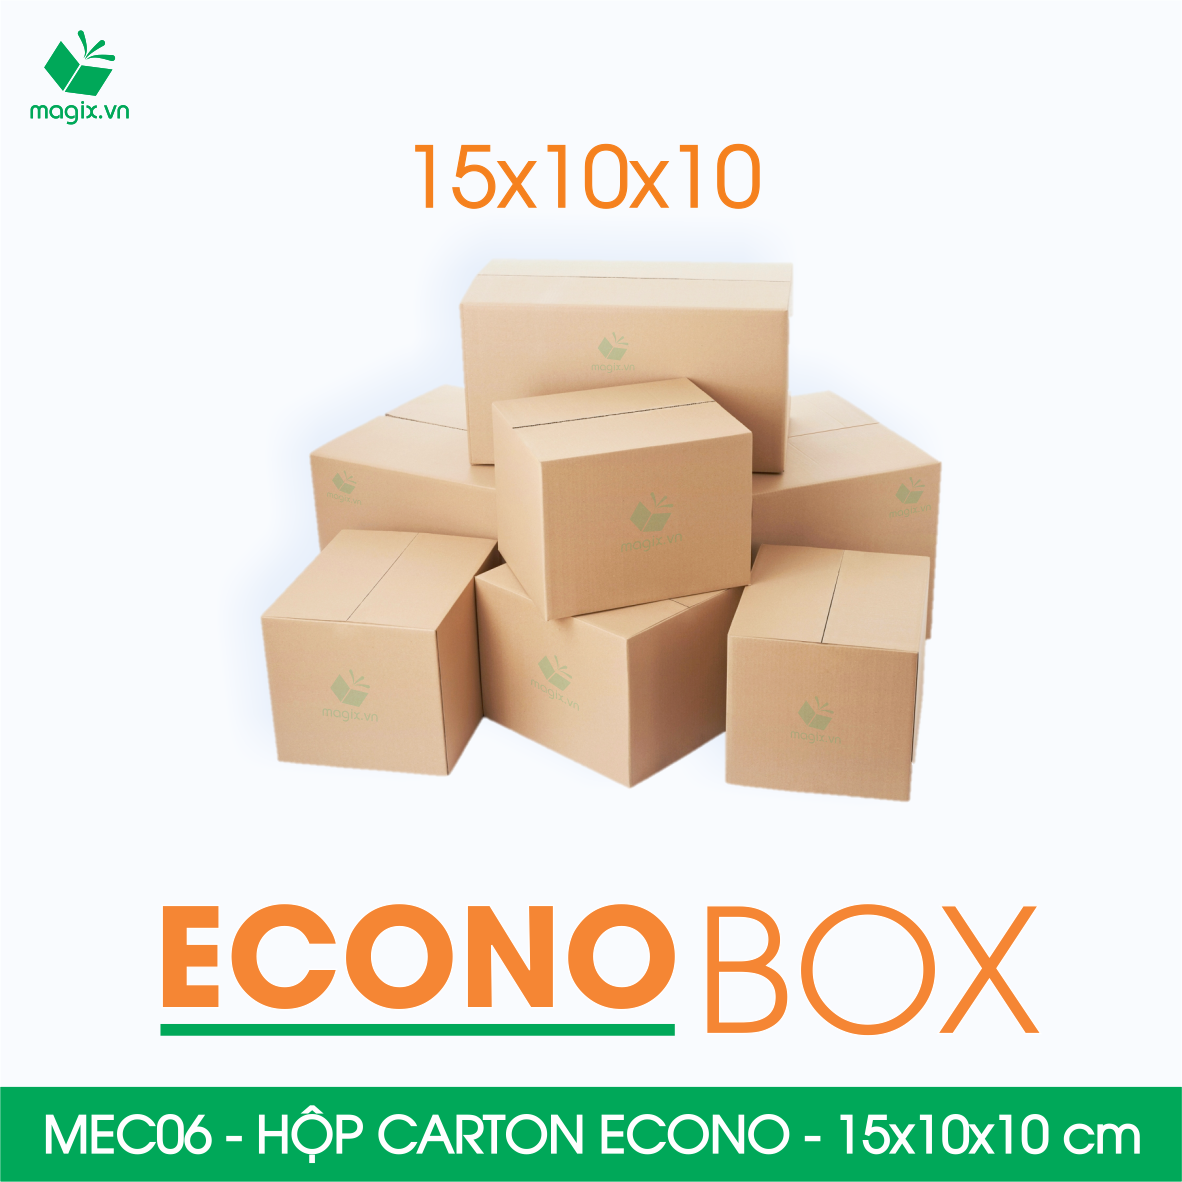 Hình ảnh MEC06 - 15x10x10 cm - Combo 60 thùng hộp carton trơn siêu tiết kiệm ECONO